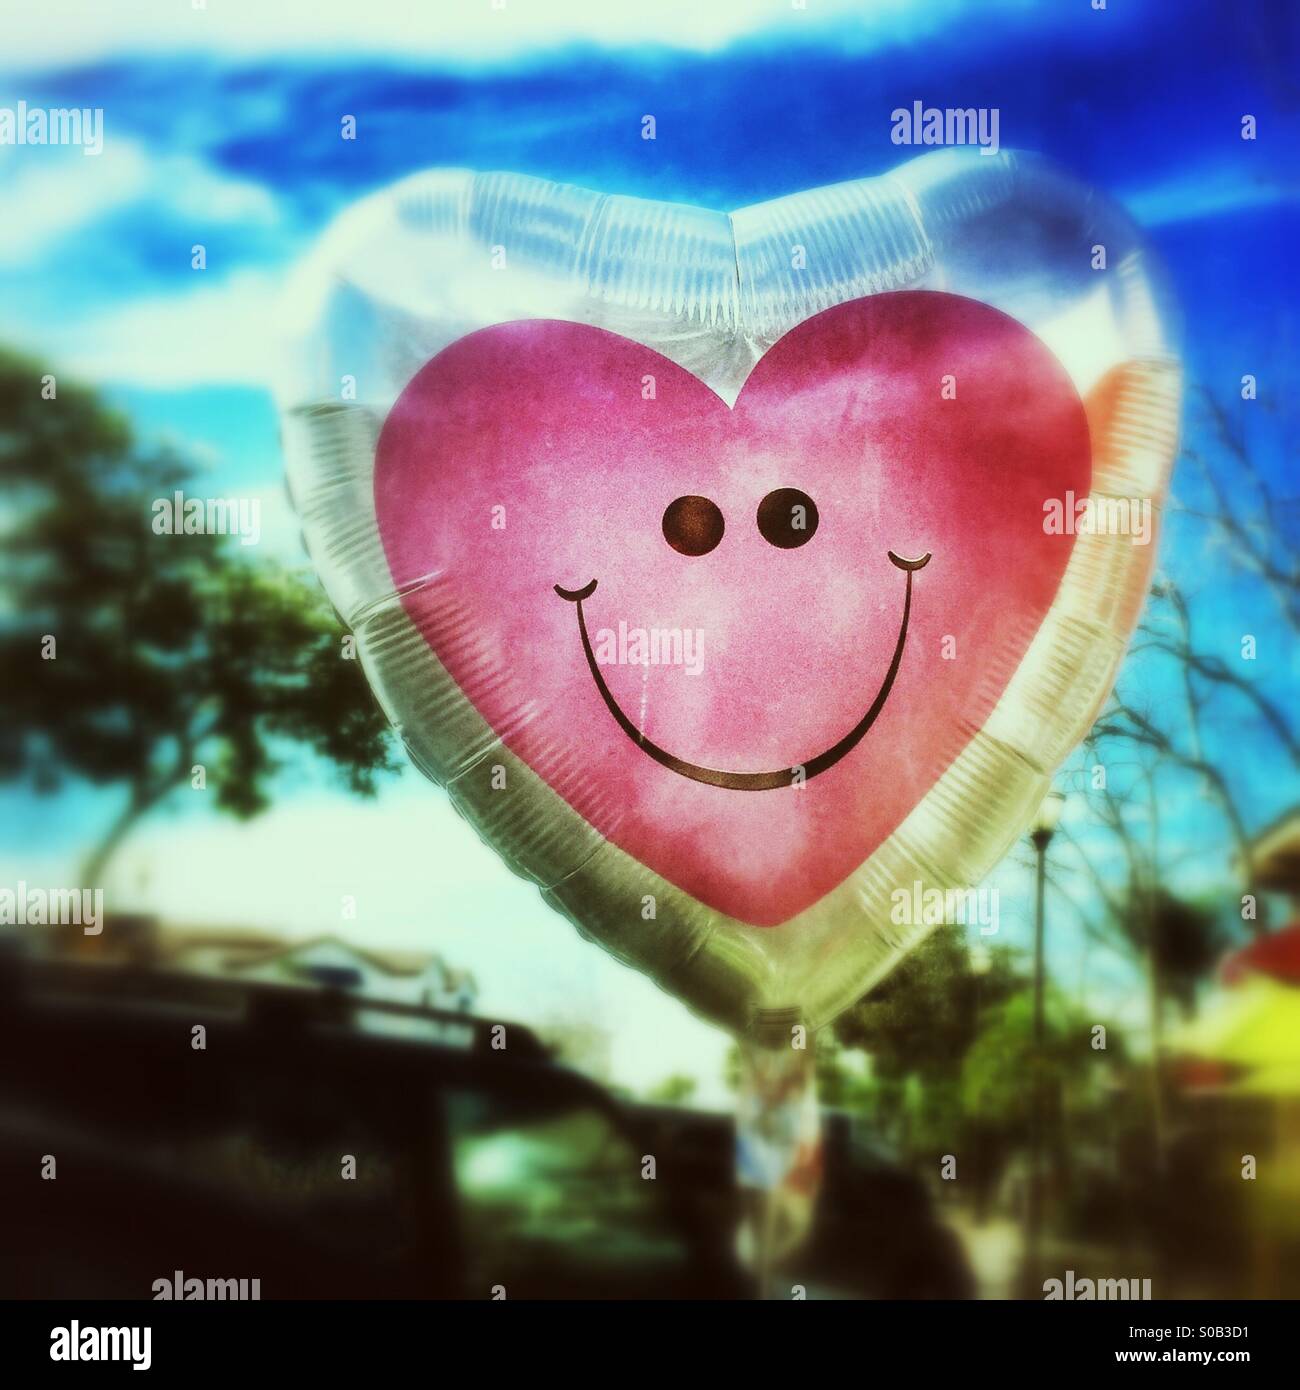 Happy, Smiling Heart Balloon Stock Photo